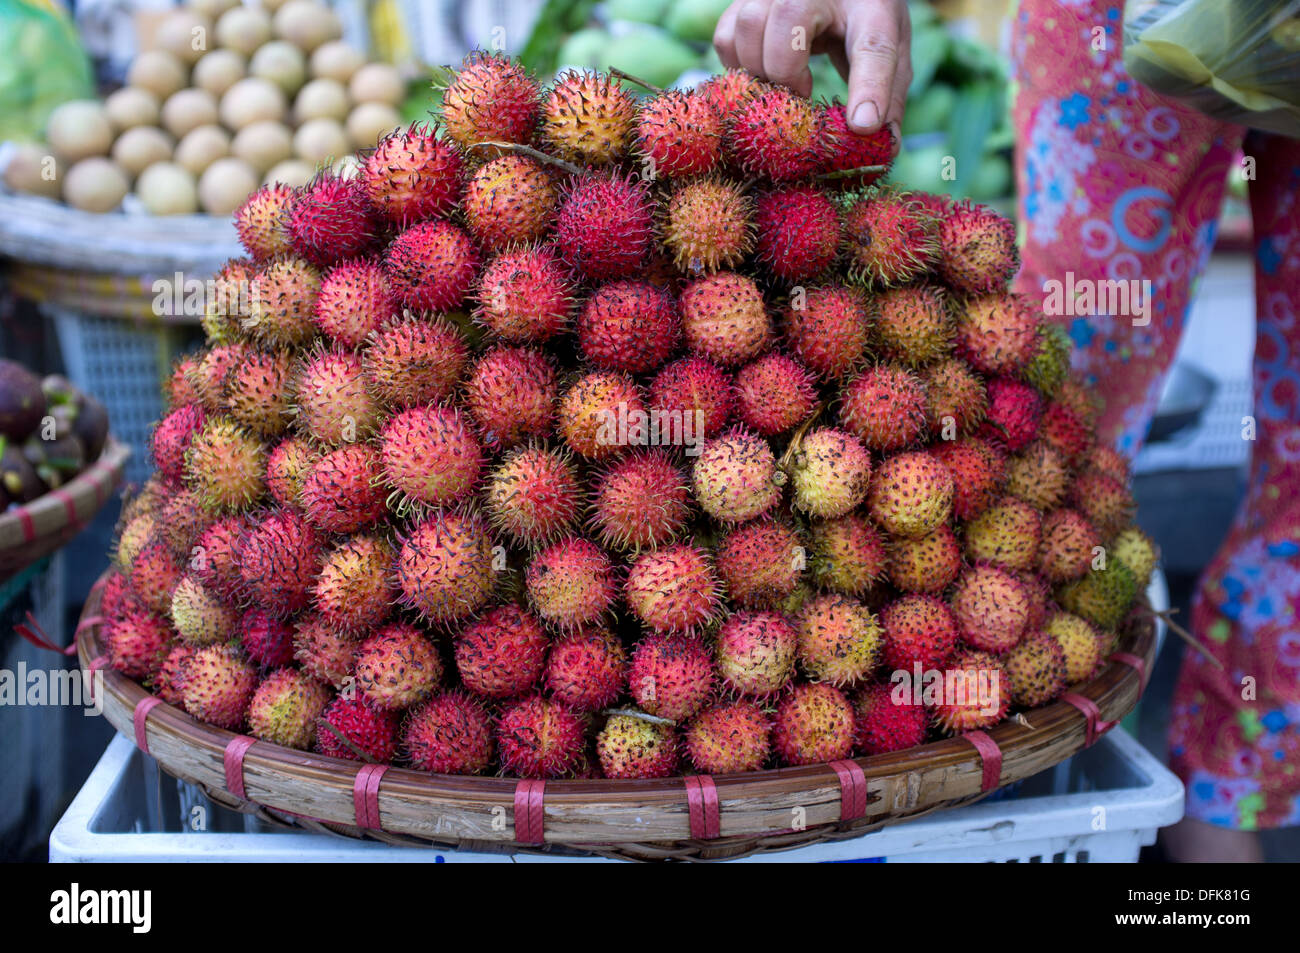 Panier de fruits ramboutan for sale at market à Saigon, Vietnam. Banque D'Images